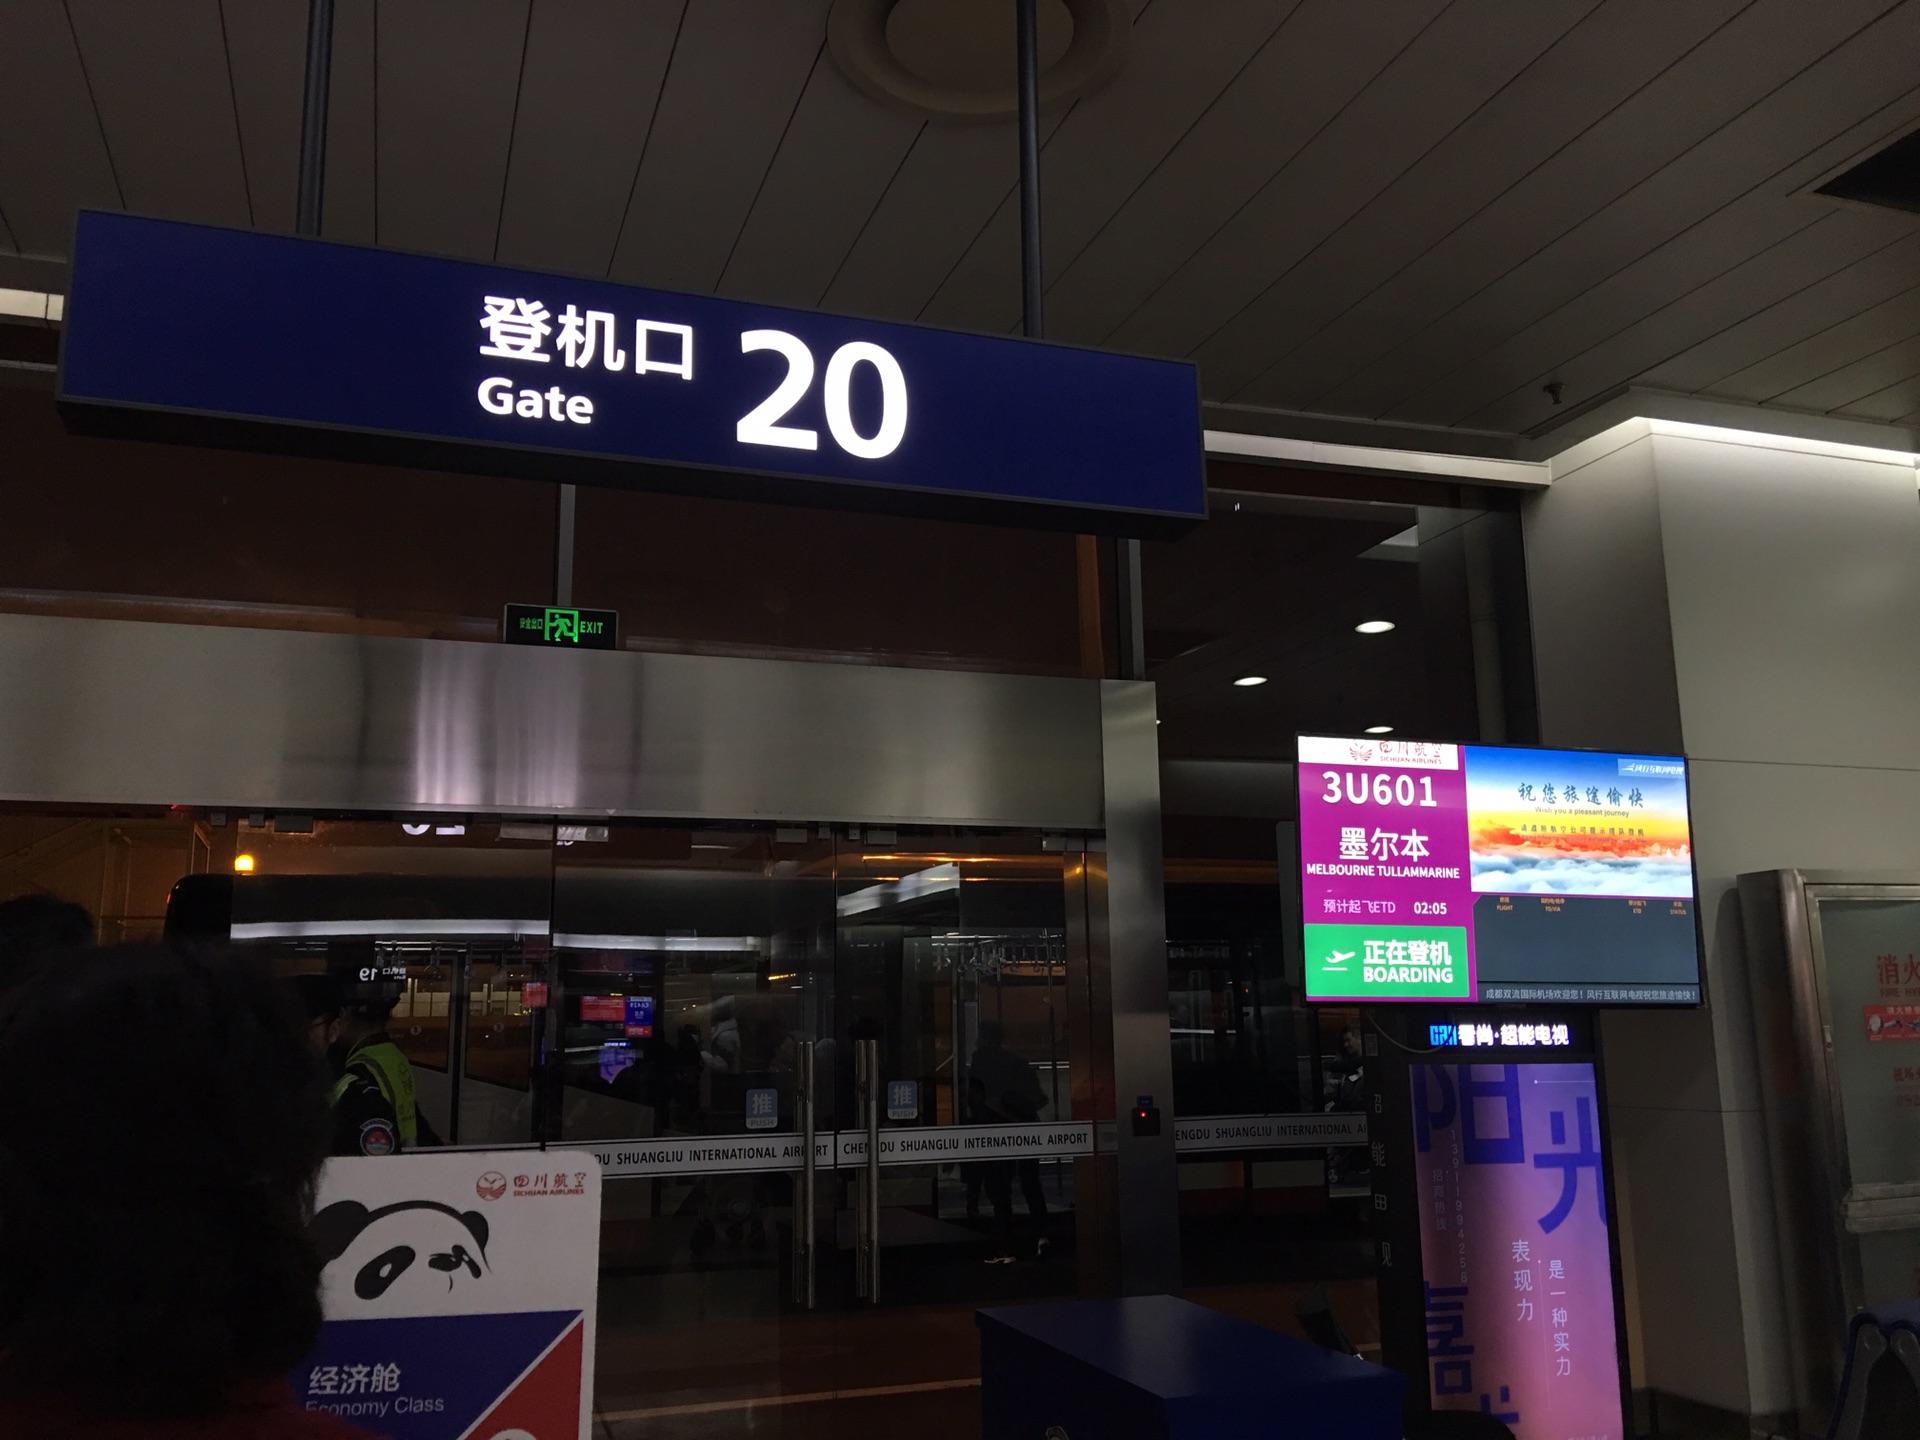 成都双流国际机场t1航站楼